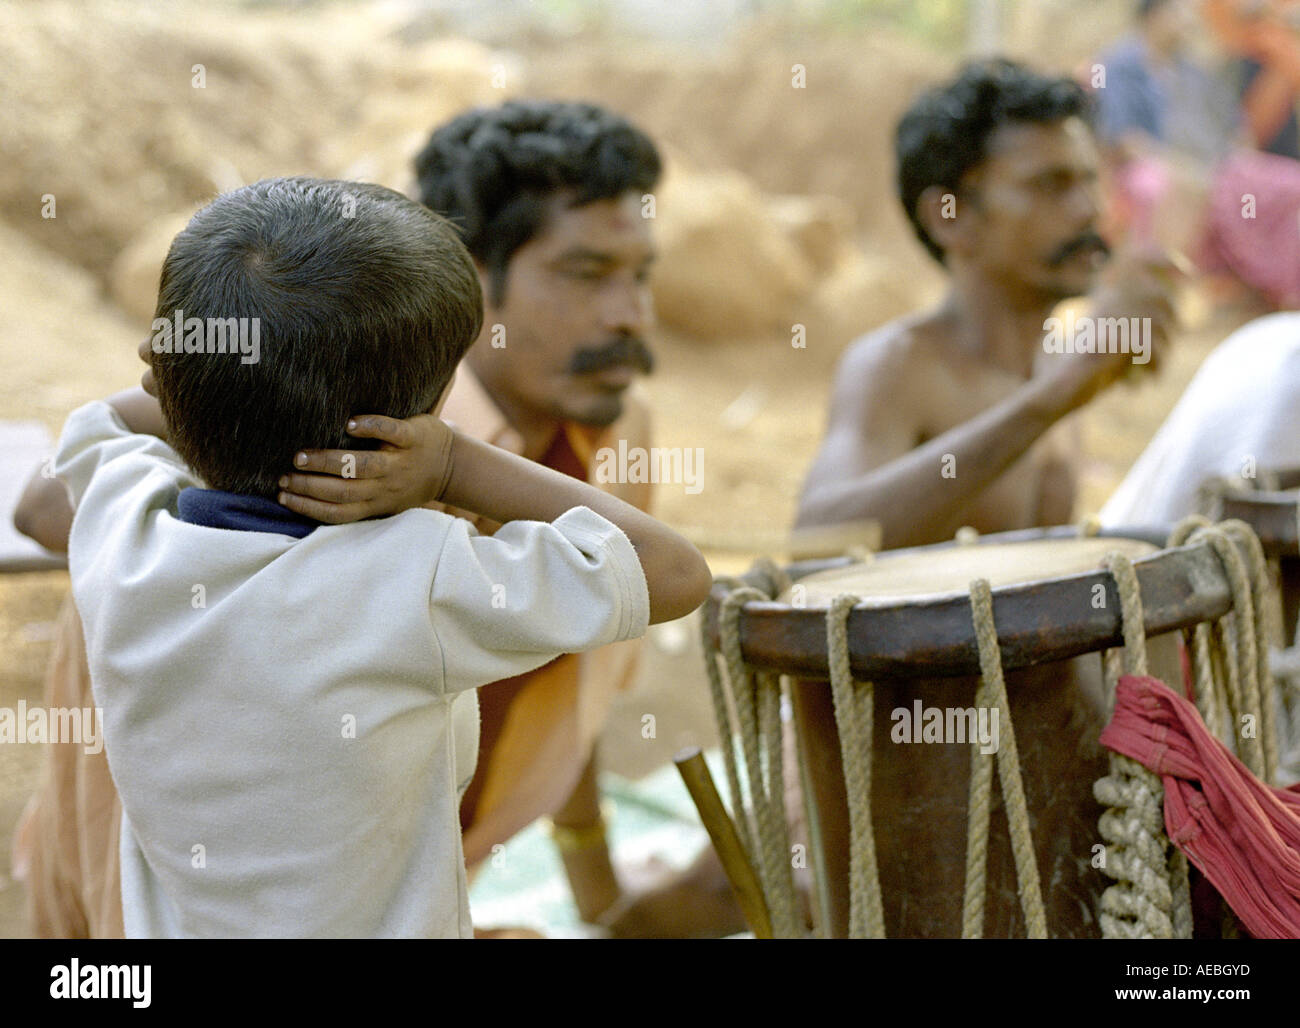 Les percussionnistes traditionnels indiens effectuer au cours d'une cérémonie au temple dans le Kerala, un garçon de ferme ses oreilles à cause du son bruyant Banque D'Images